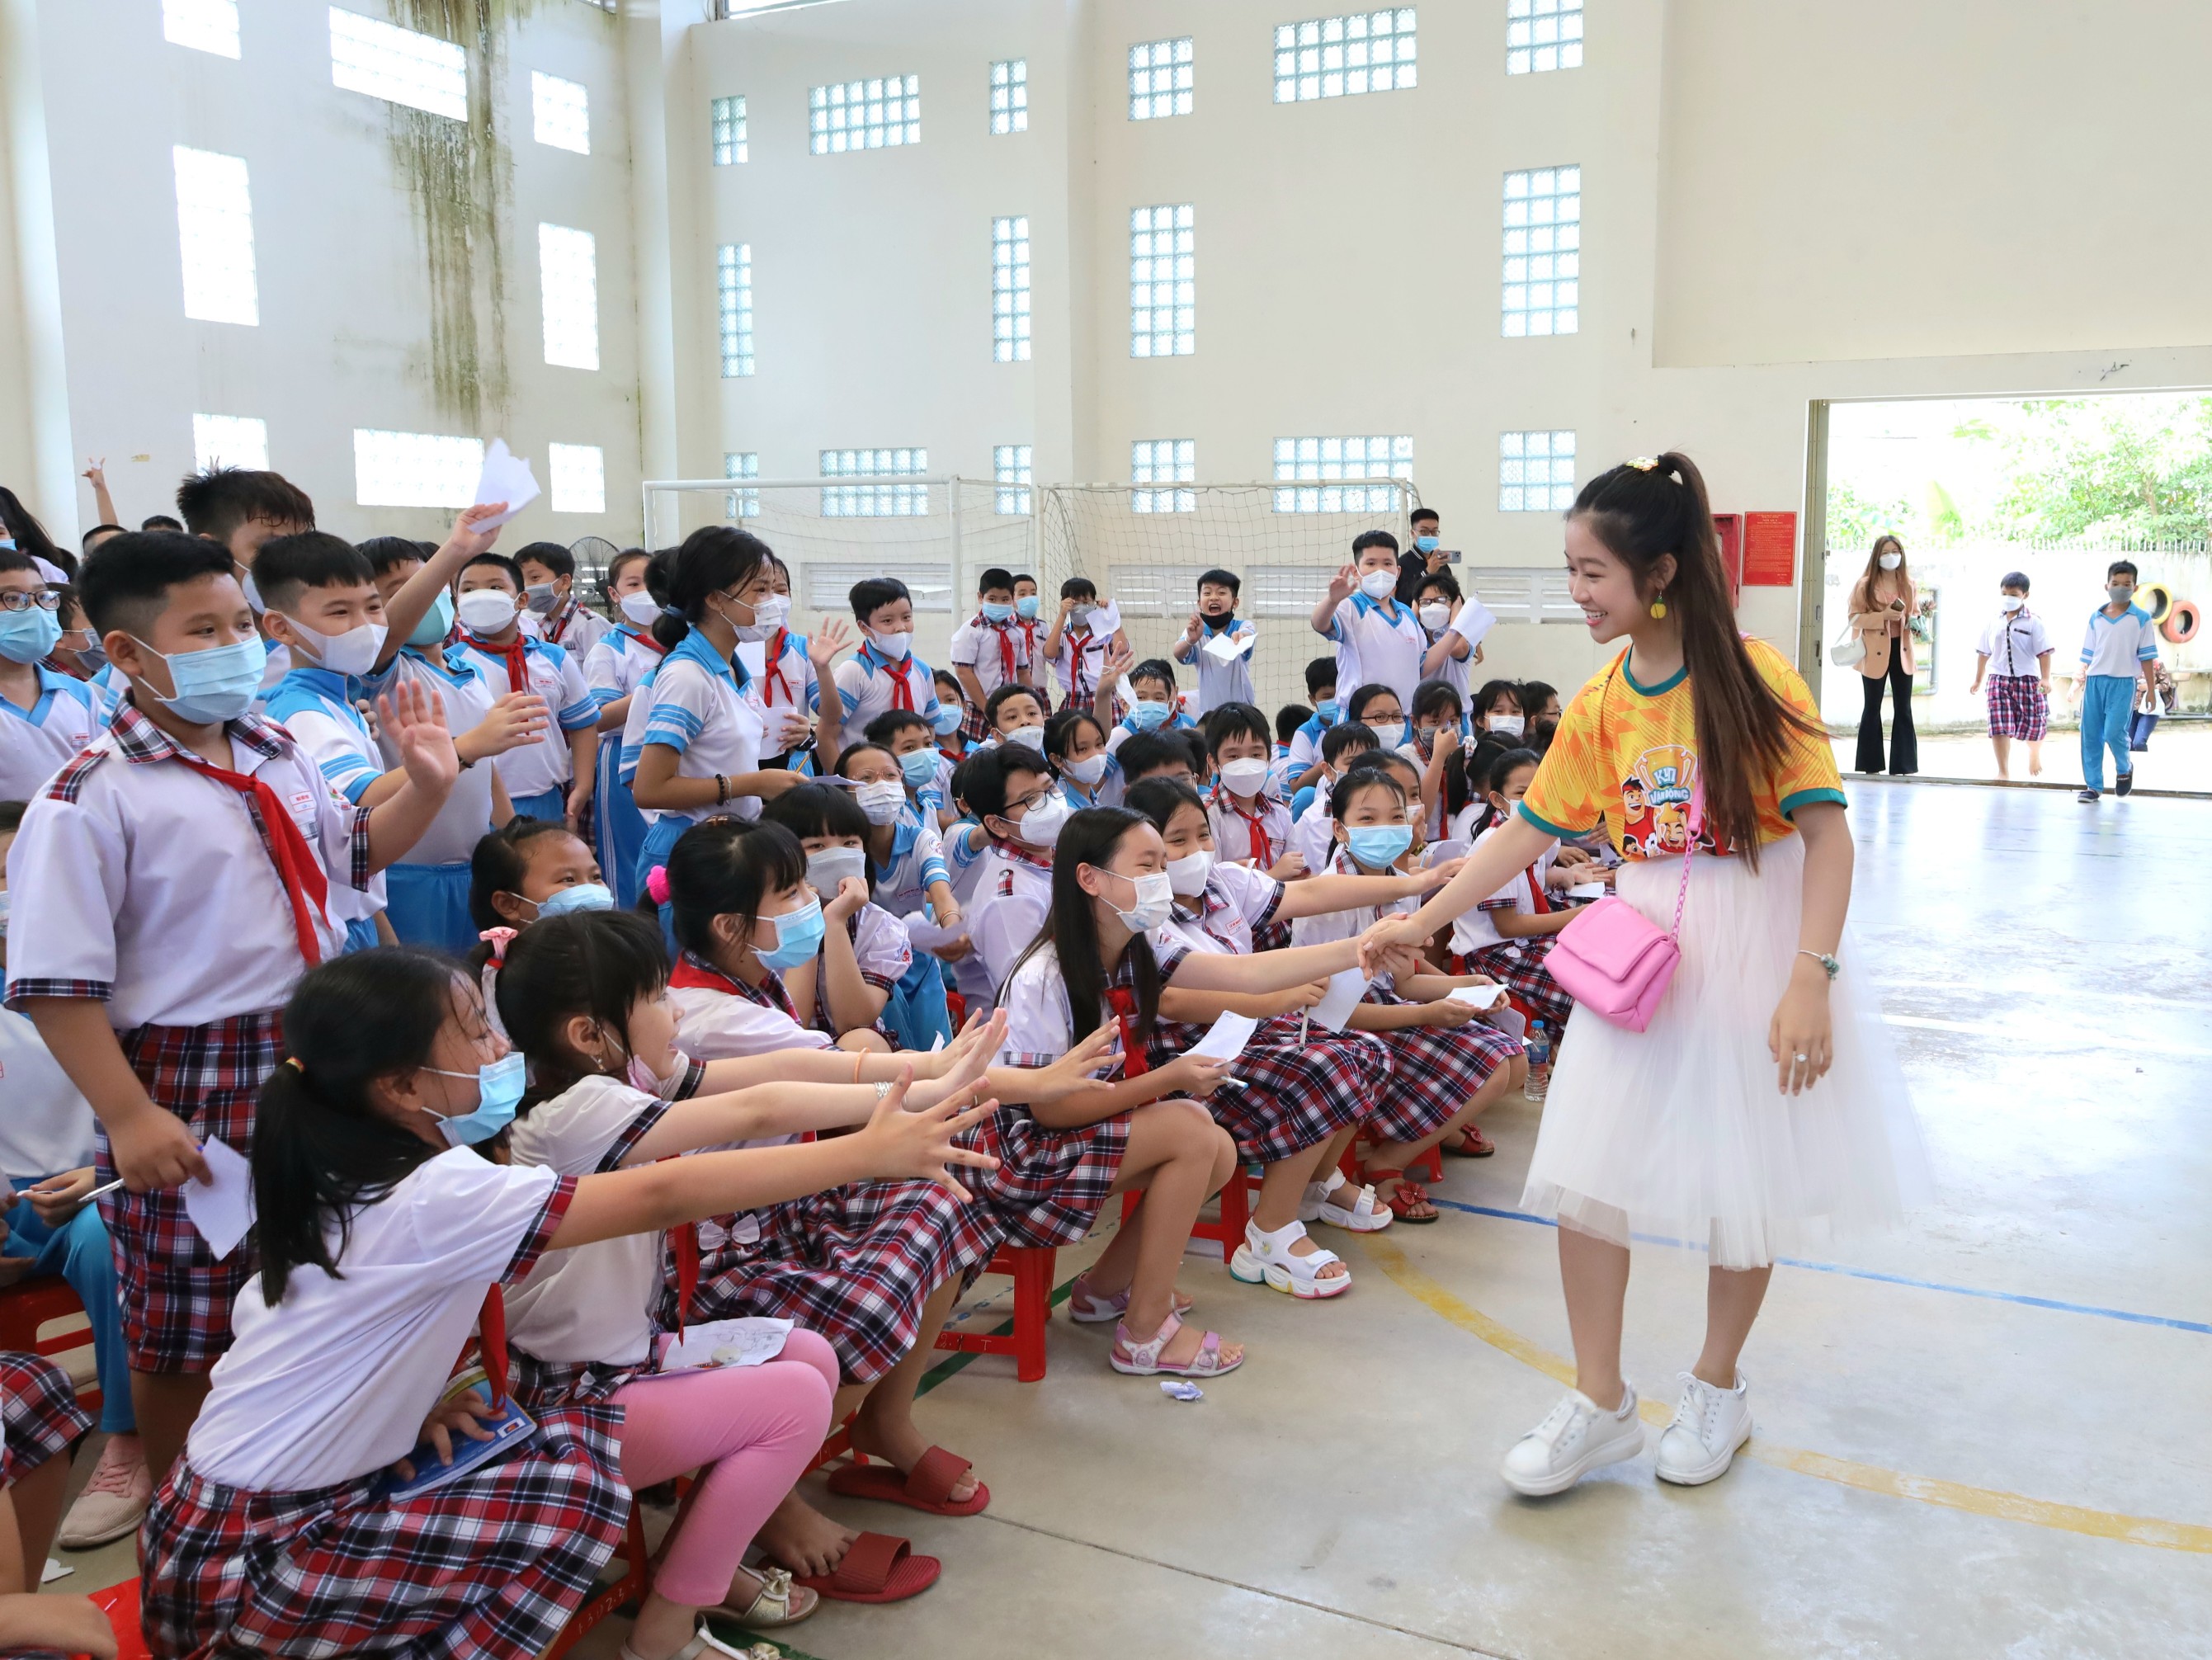 Diễn viên, ca sĩ Lê Huỳnh Bảo Ngọc nhận được sự chào đón nhiệt tình từ các em học sinh.